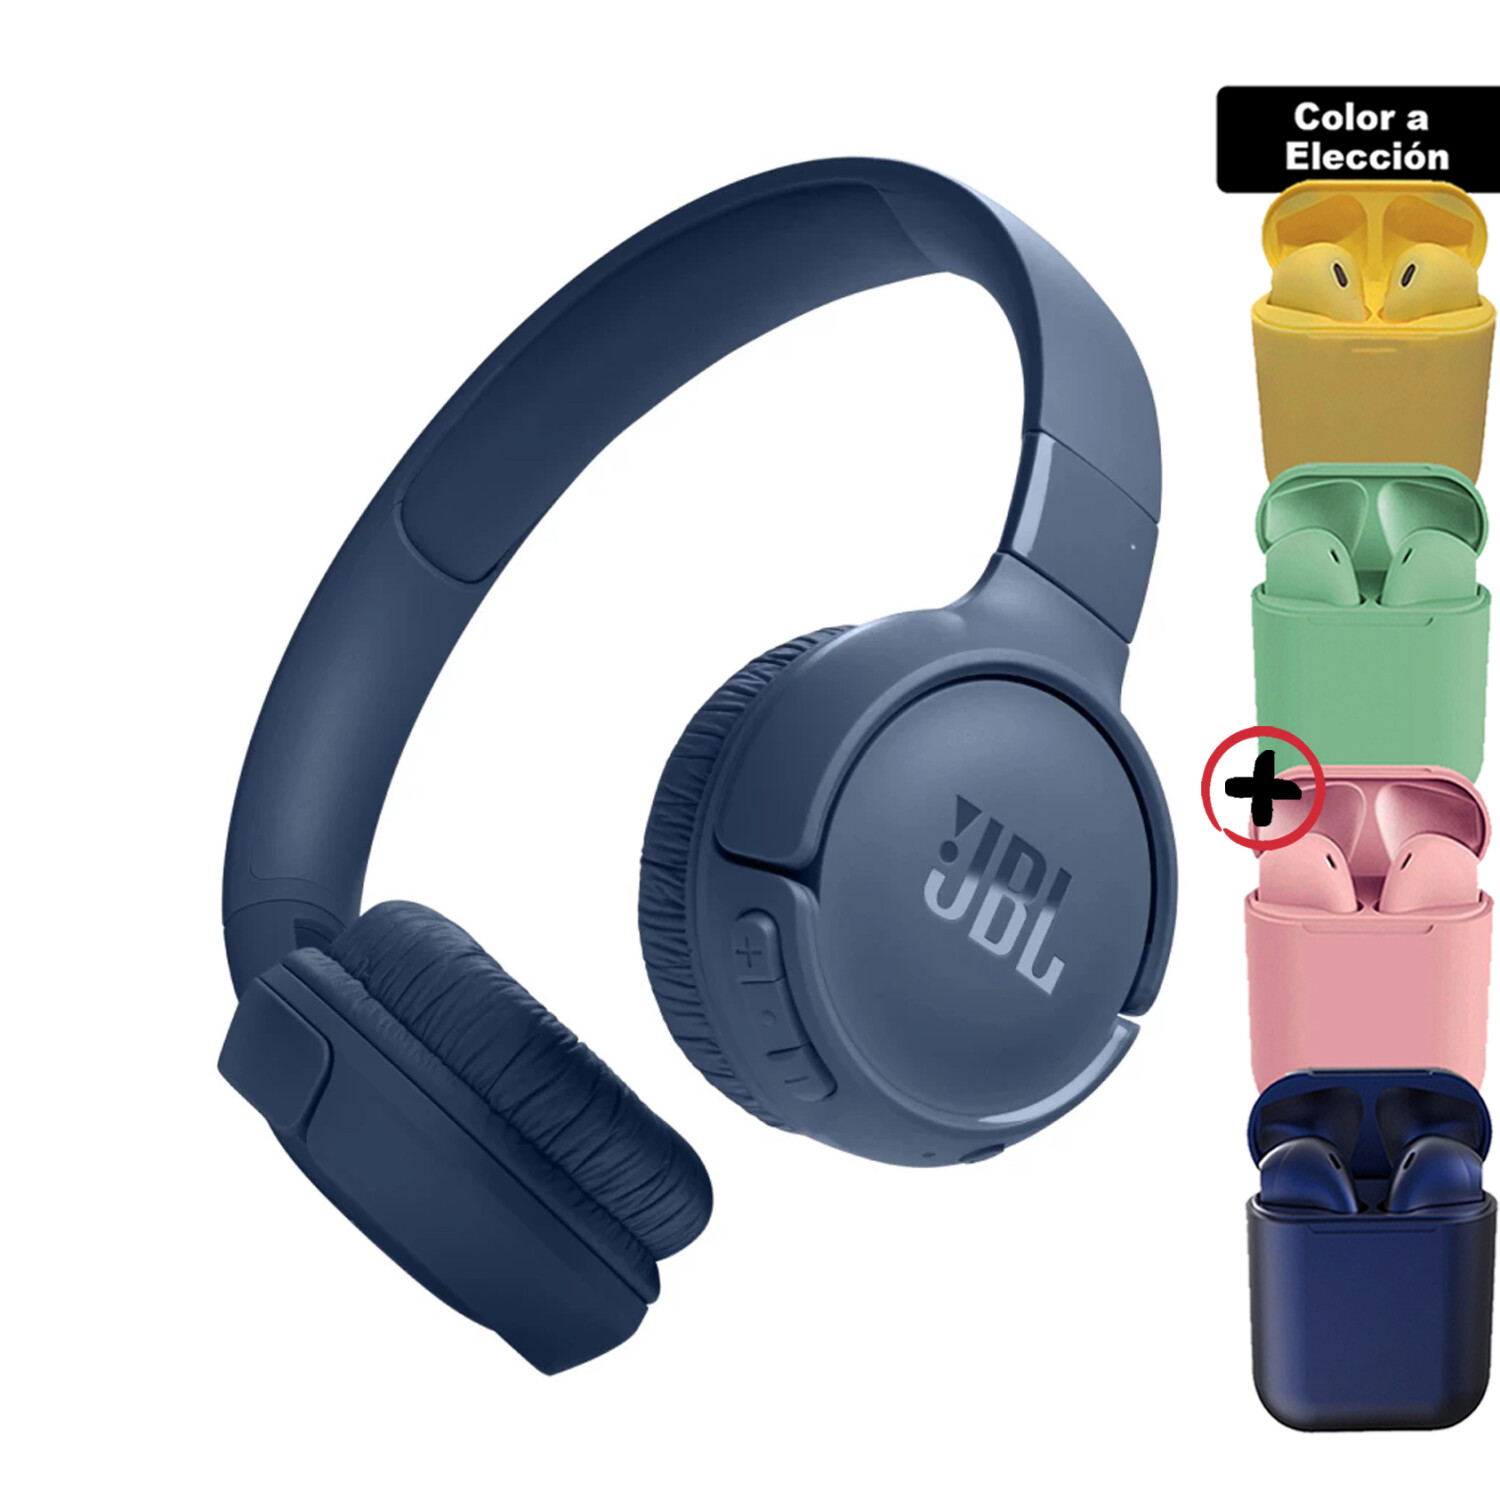 Audífonos Jbl Tune 520bt Inalámbricos Bluetooth Azul + Auriculares